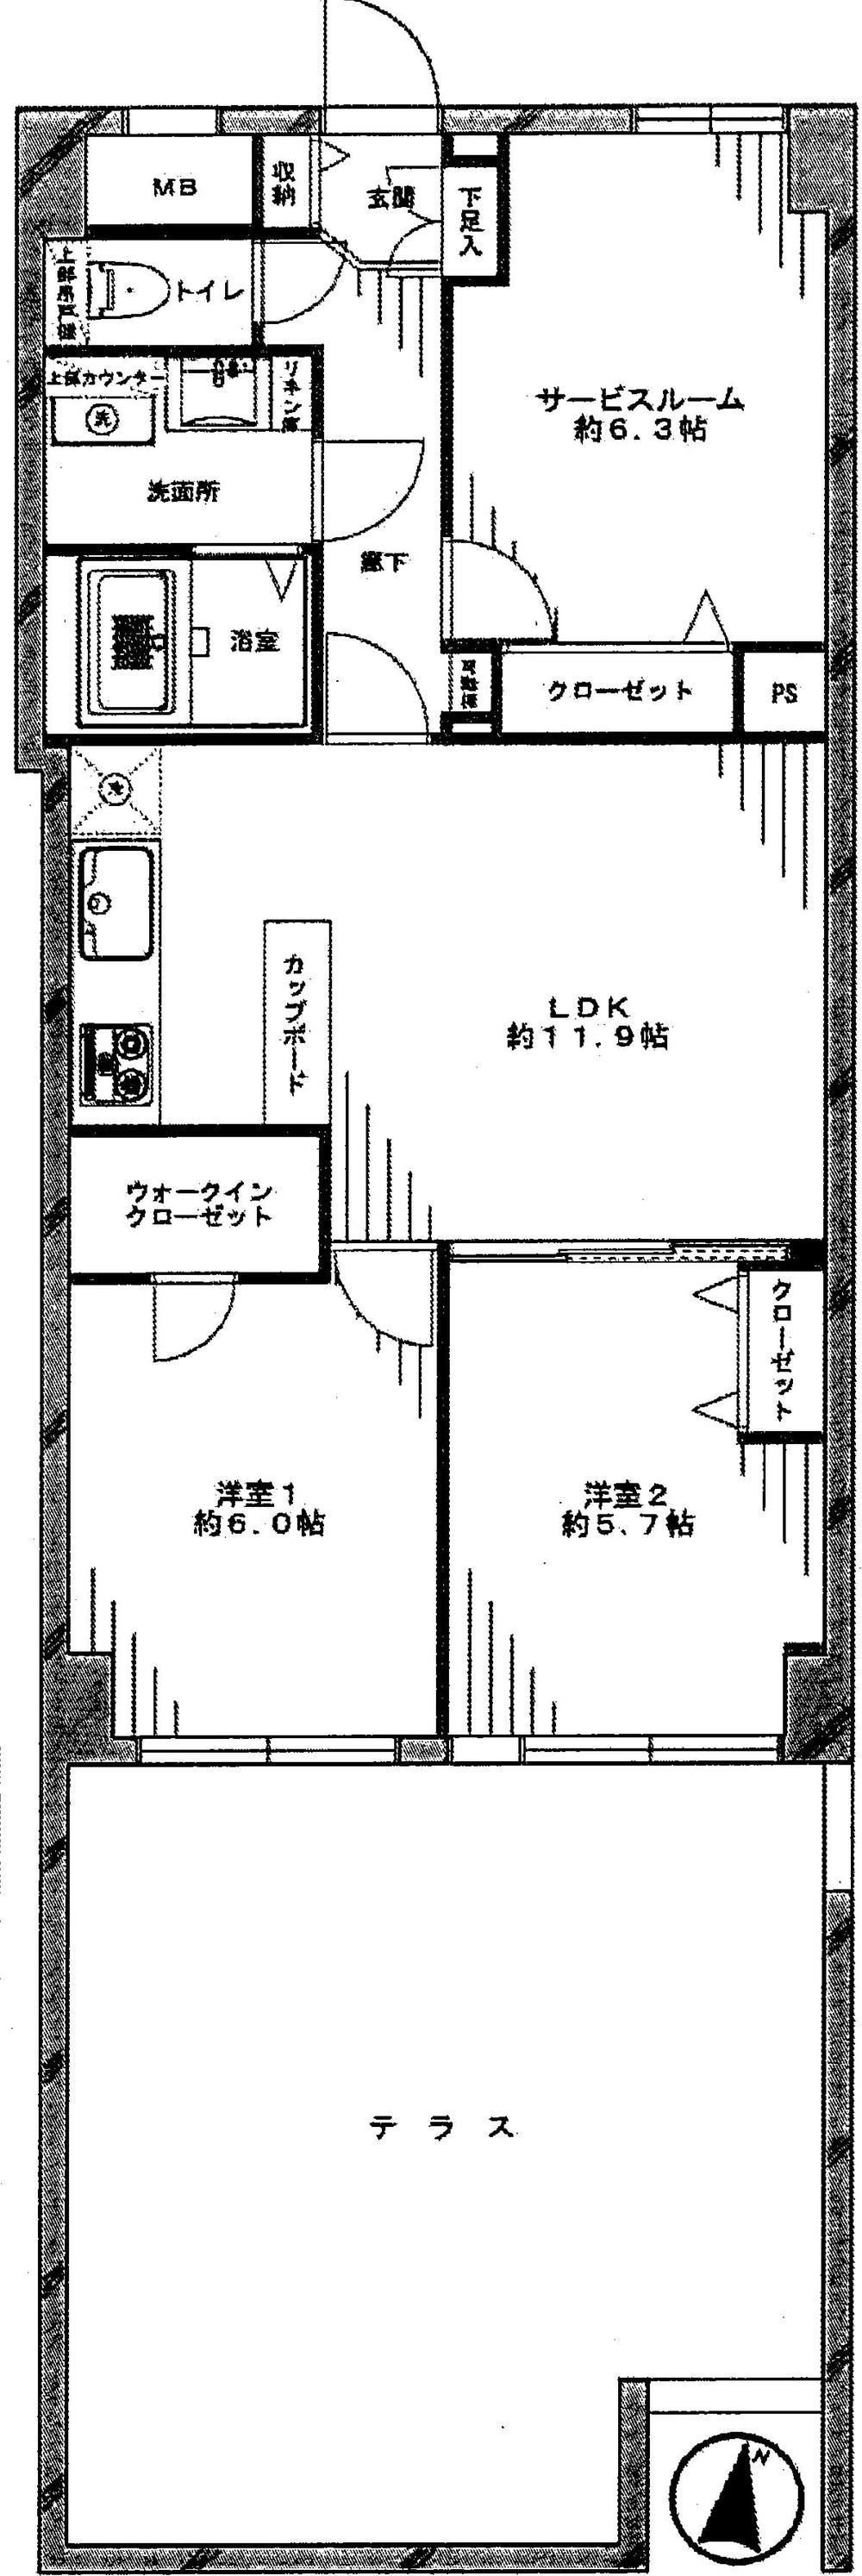 Floor plan. 2LDK + S (storeroom), Price 29,800,000 yen, Occupied area 66.64 sq m